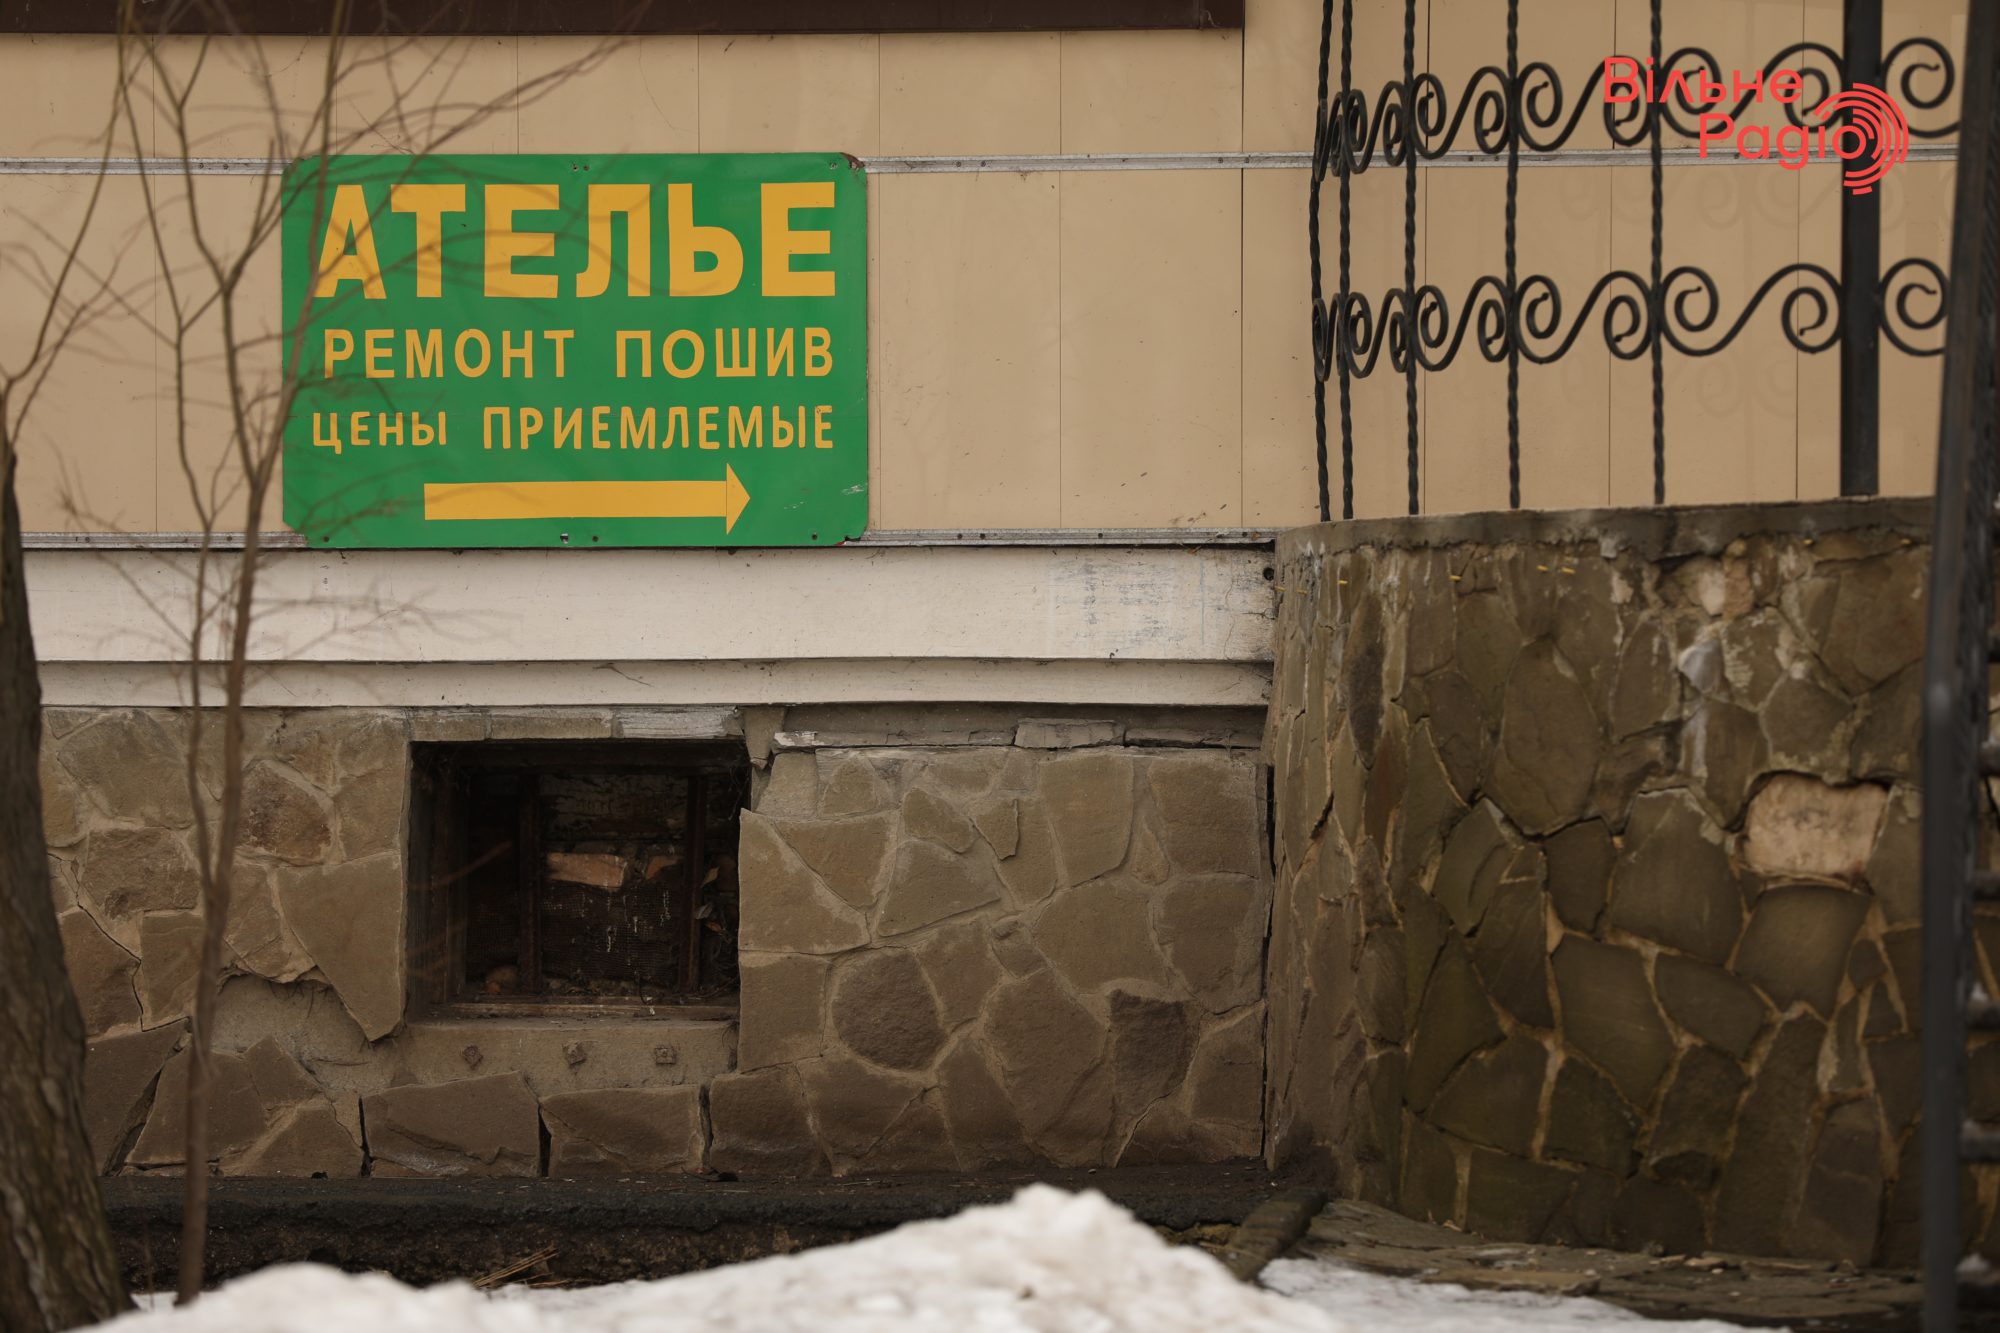 Глав 7 громад Донбасса просят убрать рекламу, которая нарушает “языковой” закон. Какая ситуация в Бахмуте”(ФОТО) 17